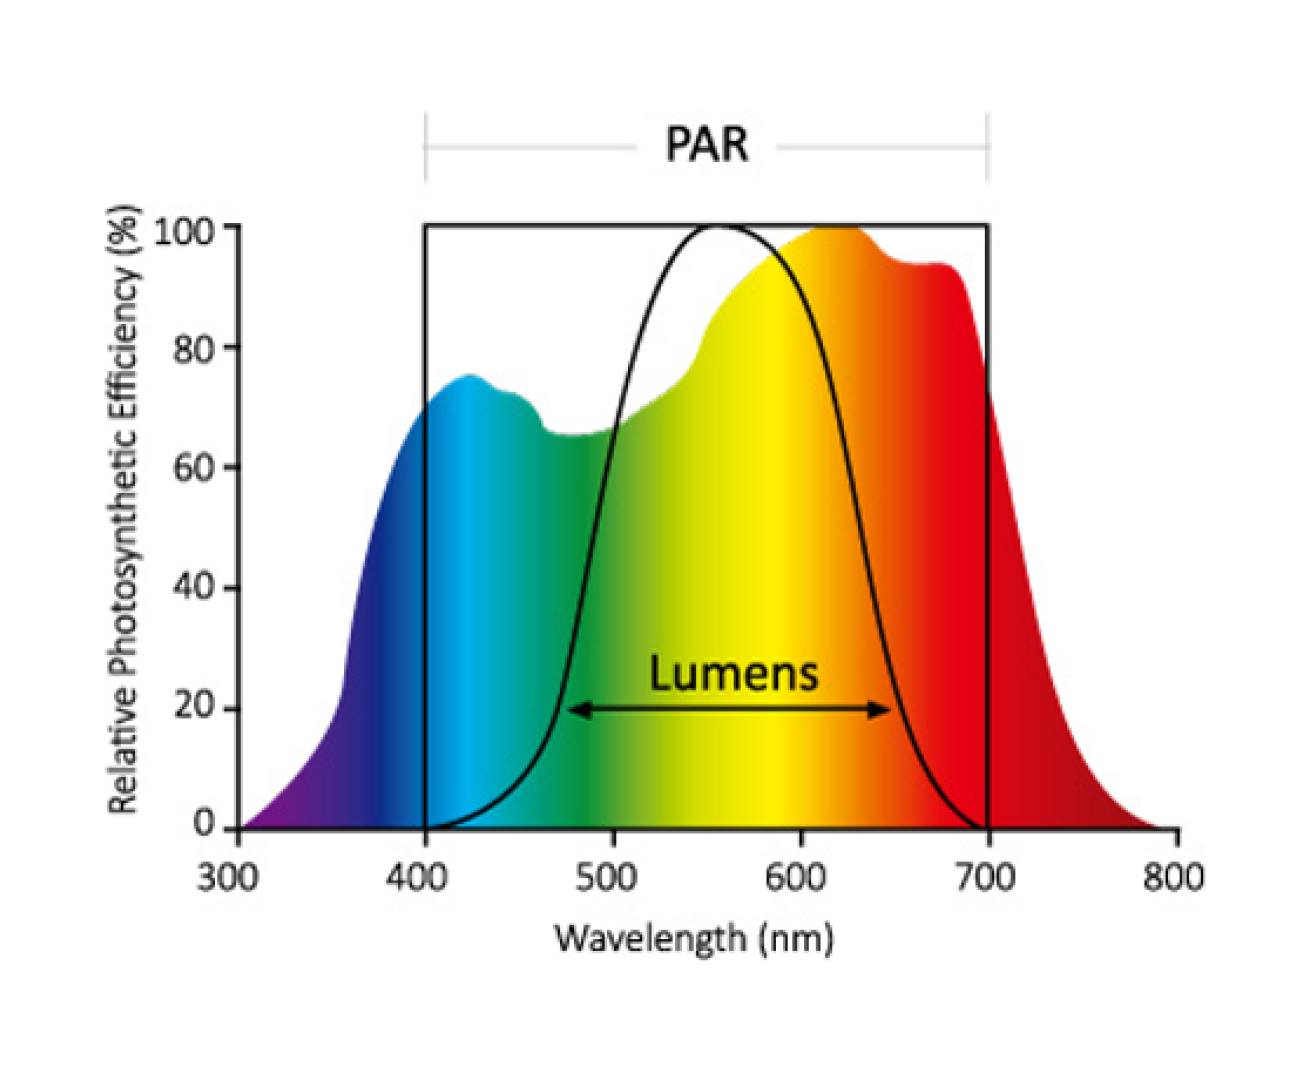 PAR/Lumen graph